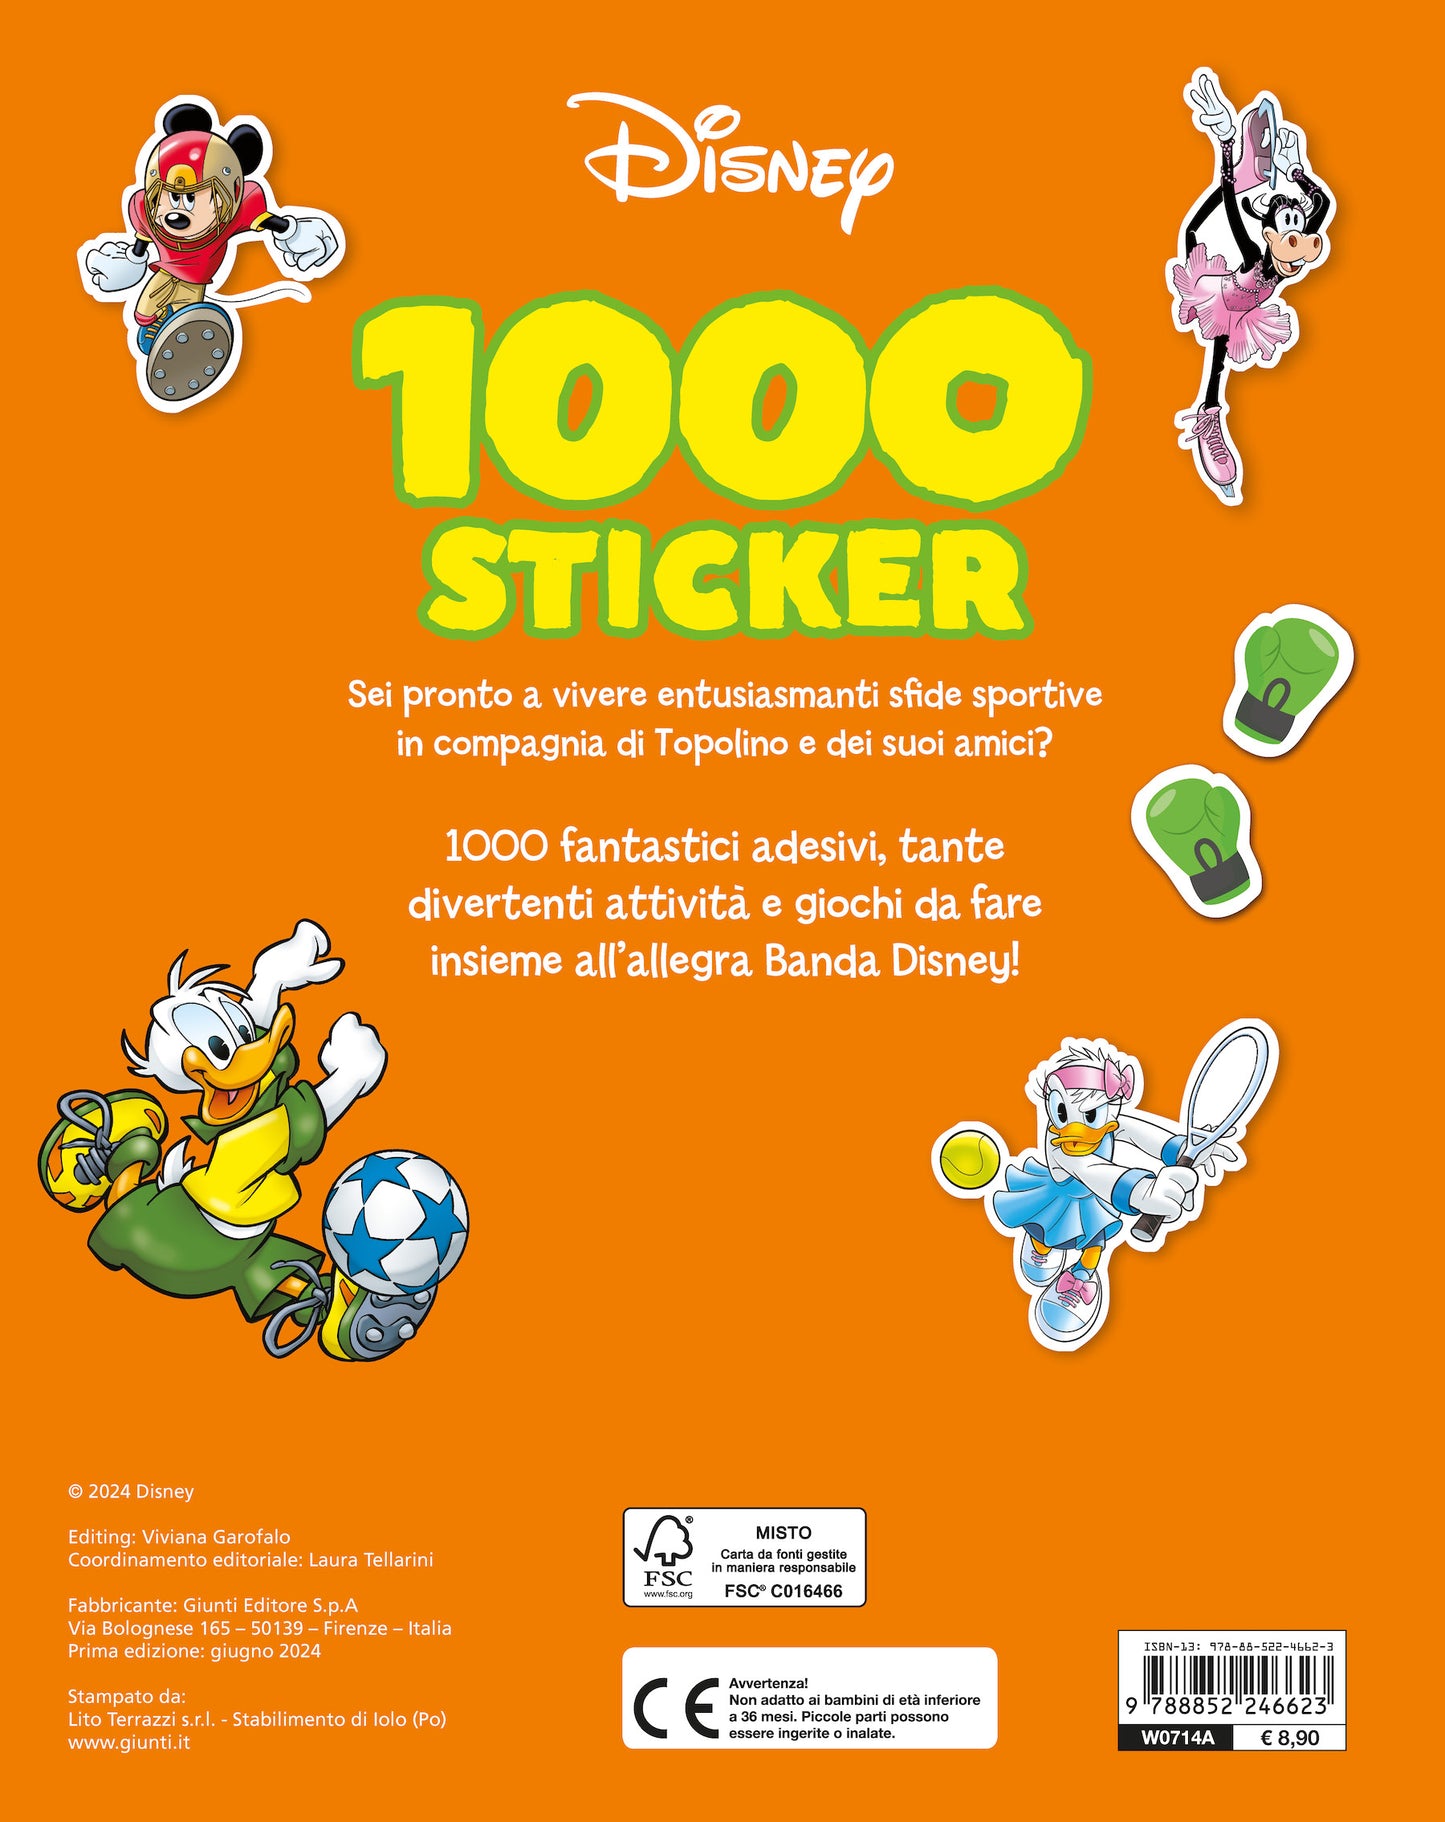 Mickey 1000 Sticker::Tanti giochi e attività